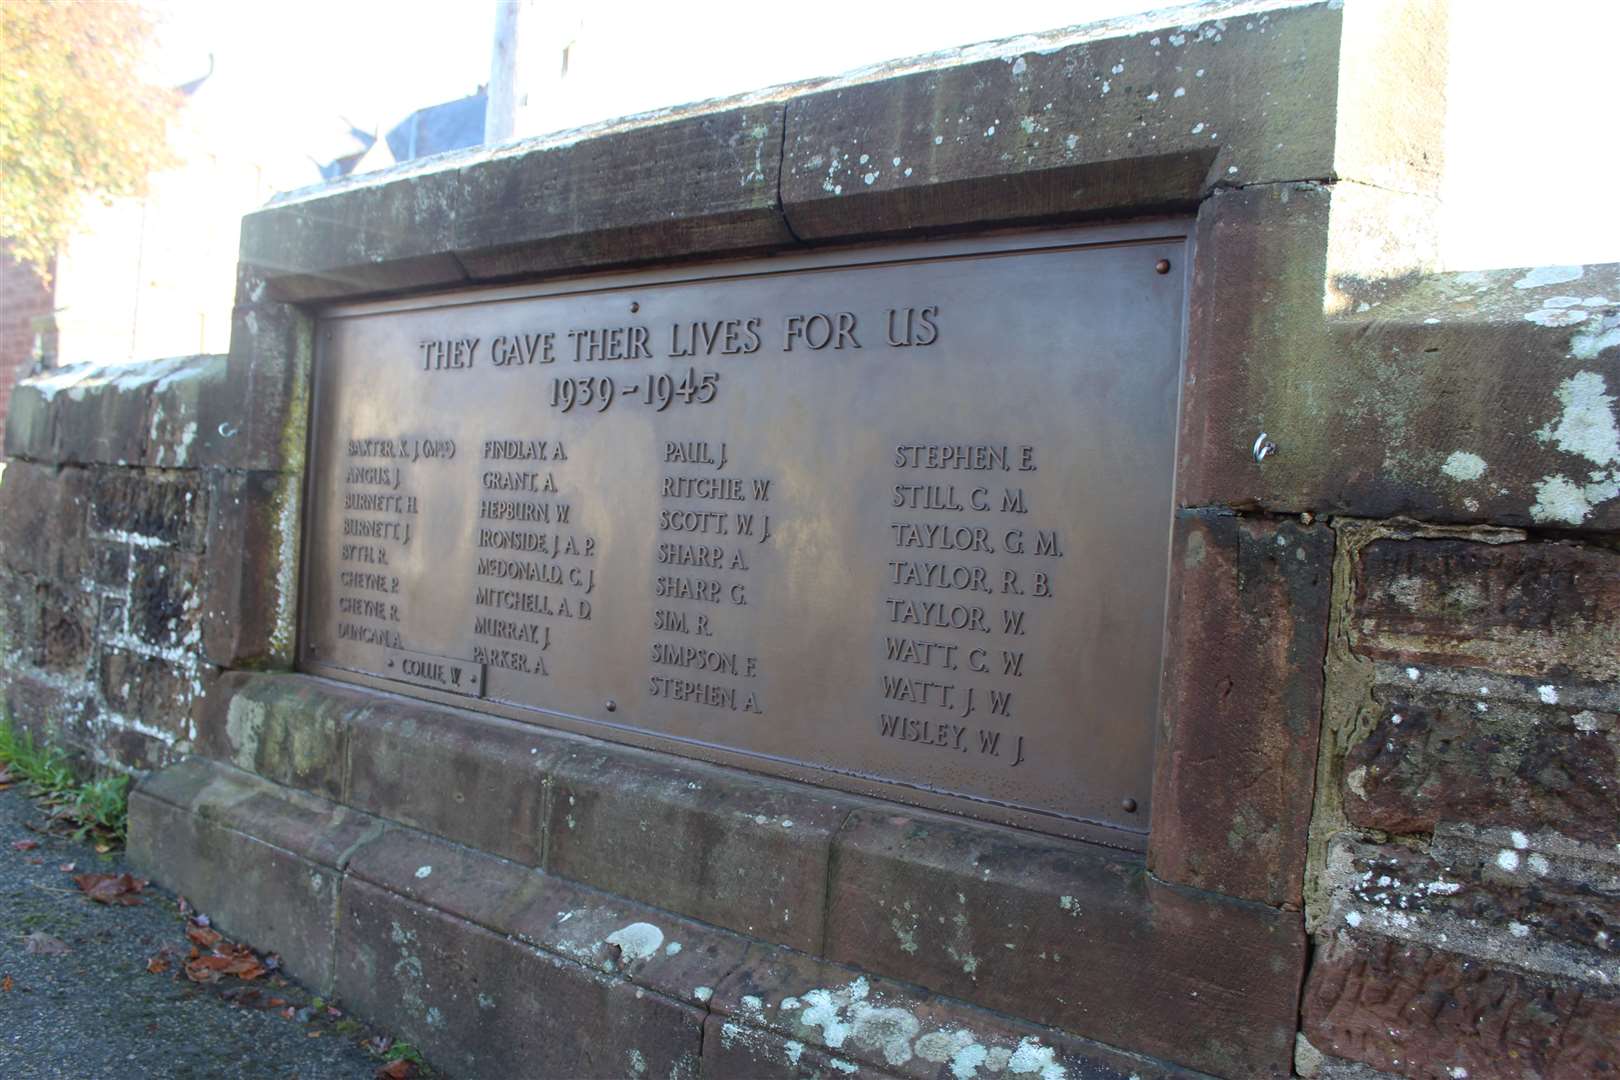 The restored memorial.